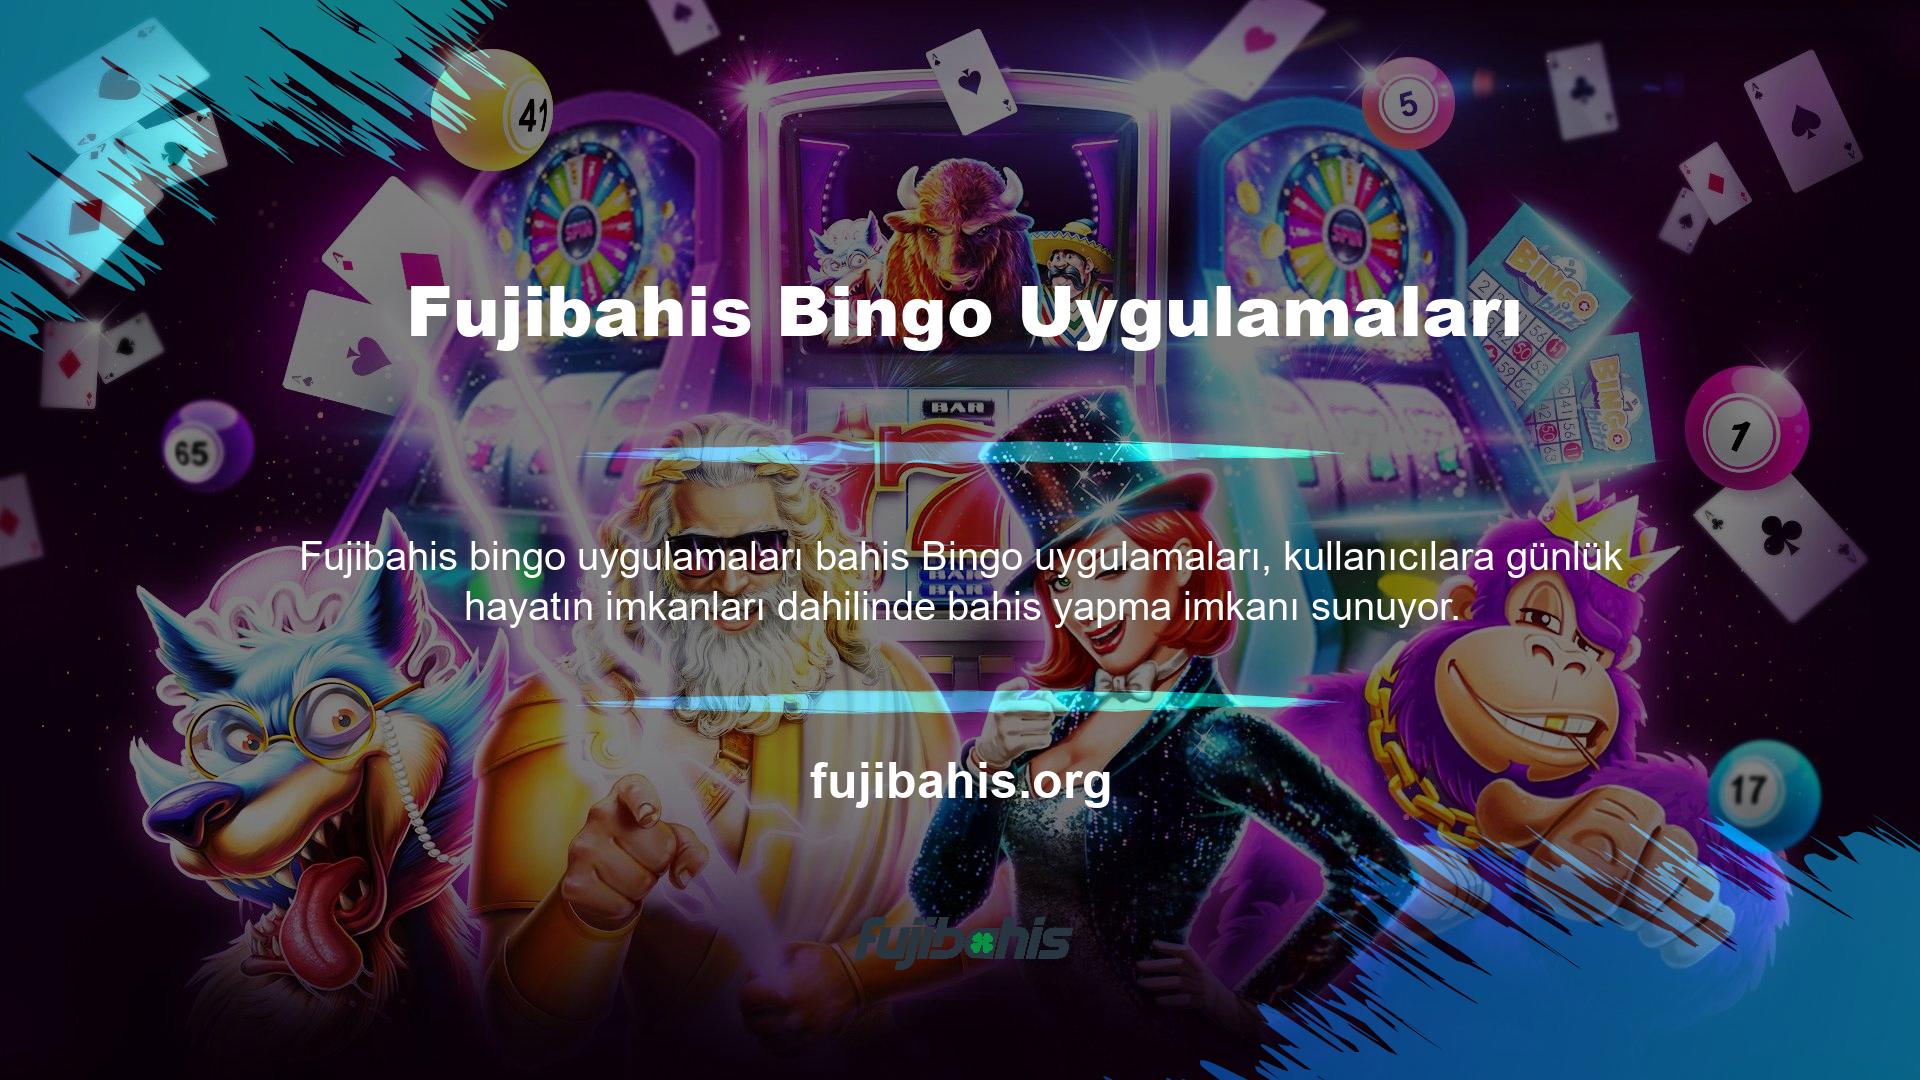 Fujibahis Bingo uygulaması canlı bahis ve otomatik bahis seçenekleri sunmaktadır